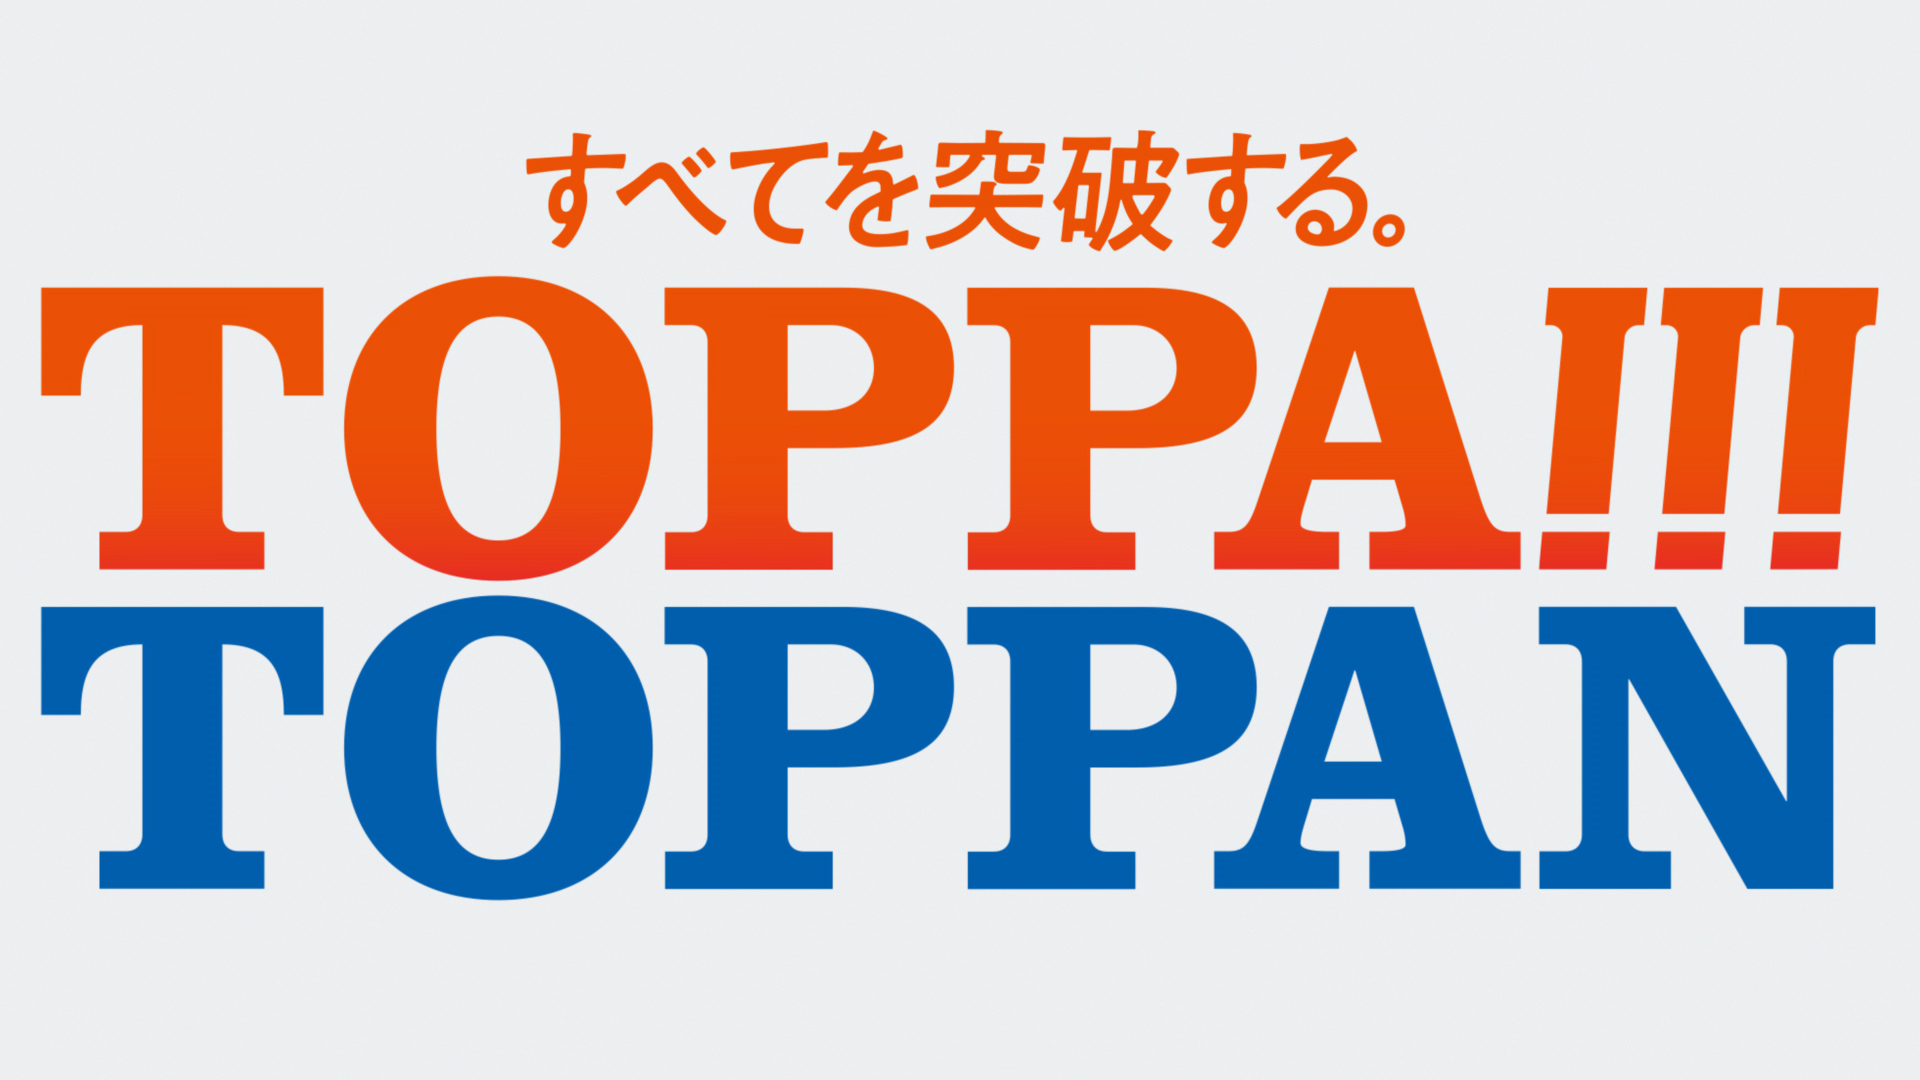 新cm すべてを突破する Toppa Toppan 放映開始大泉洋さん 成田凌さんがcmキャラクターに 凸版印刷株式会社のプレスリリース